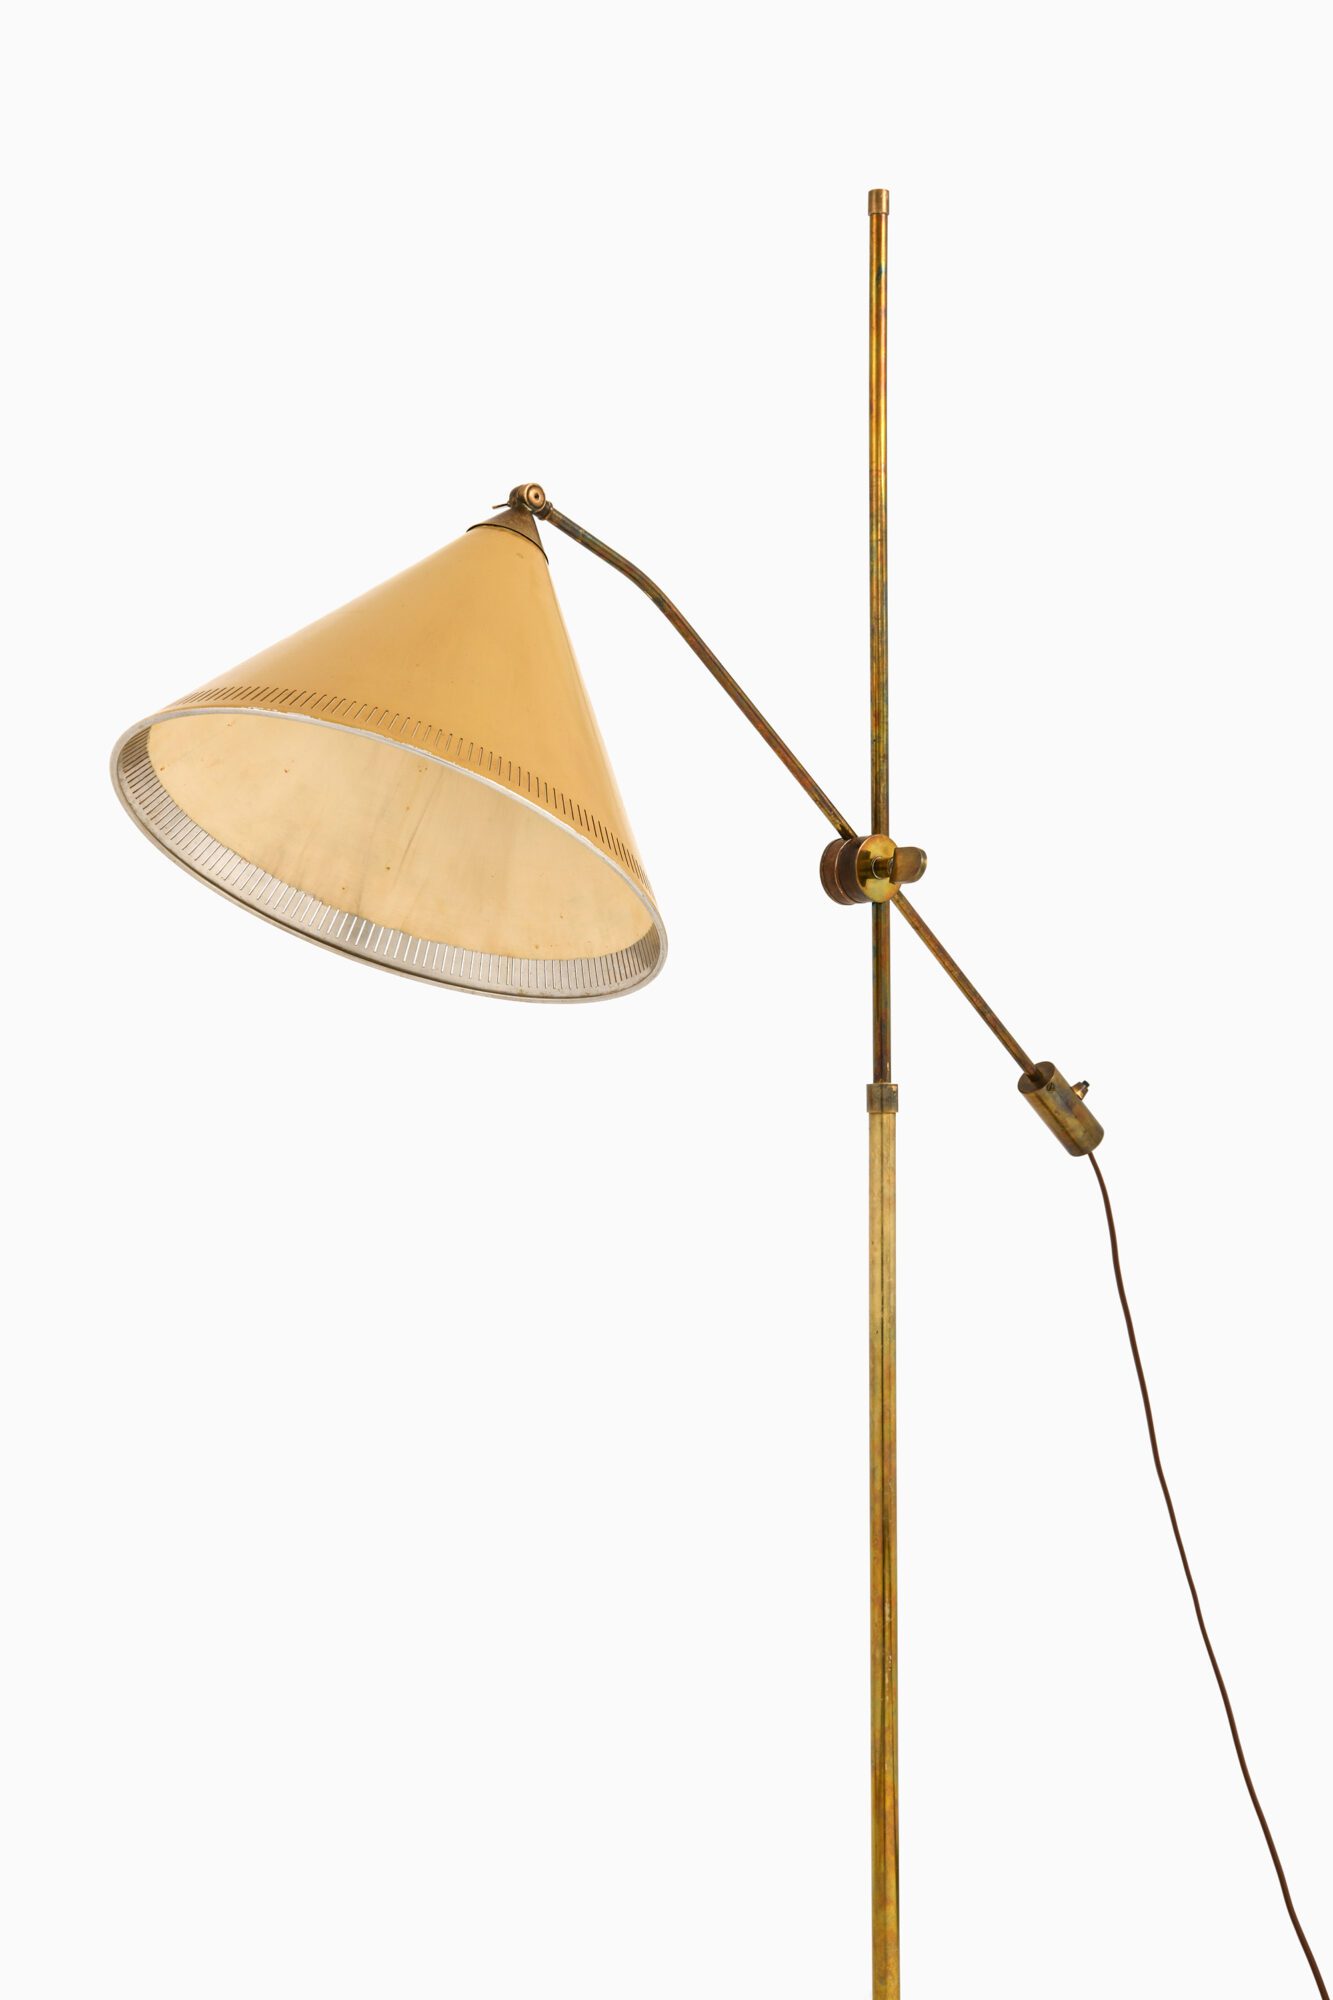 Adjustable floor lamp in brass at Studio Schalling